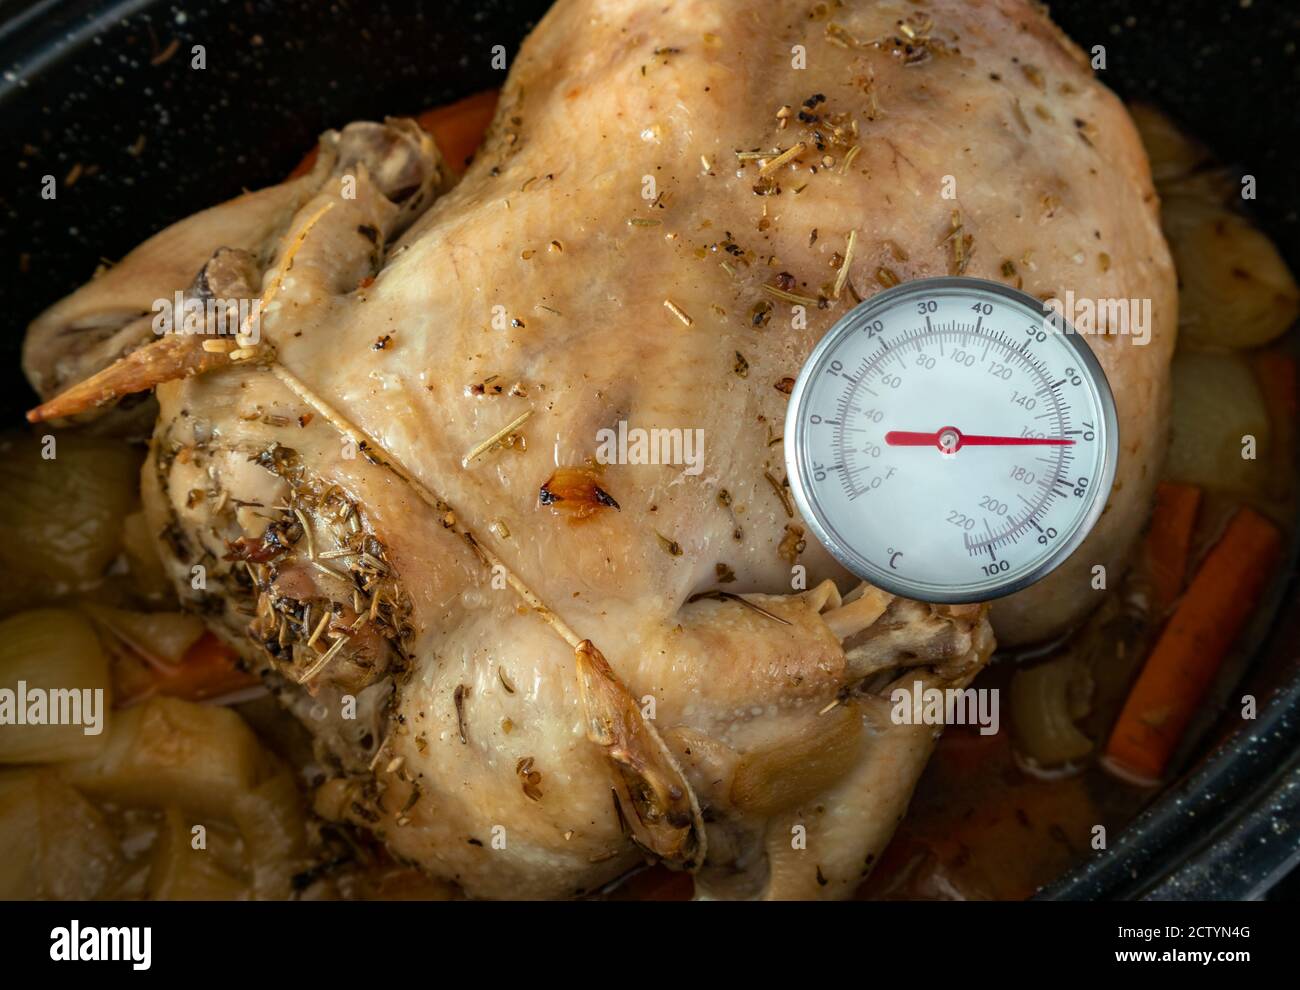 Messung der Innentemperatur des im Ofen gebackenen Hähnchens. Fleisch-/Instant-Read-Thermometer zur Messung der lebensmittelsicheren Temperatur. Ganzes Huhn in schwarzer Pfanne. Stockfoto